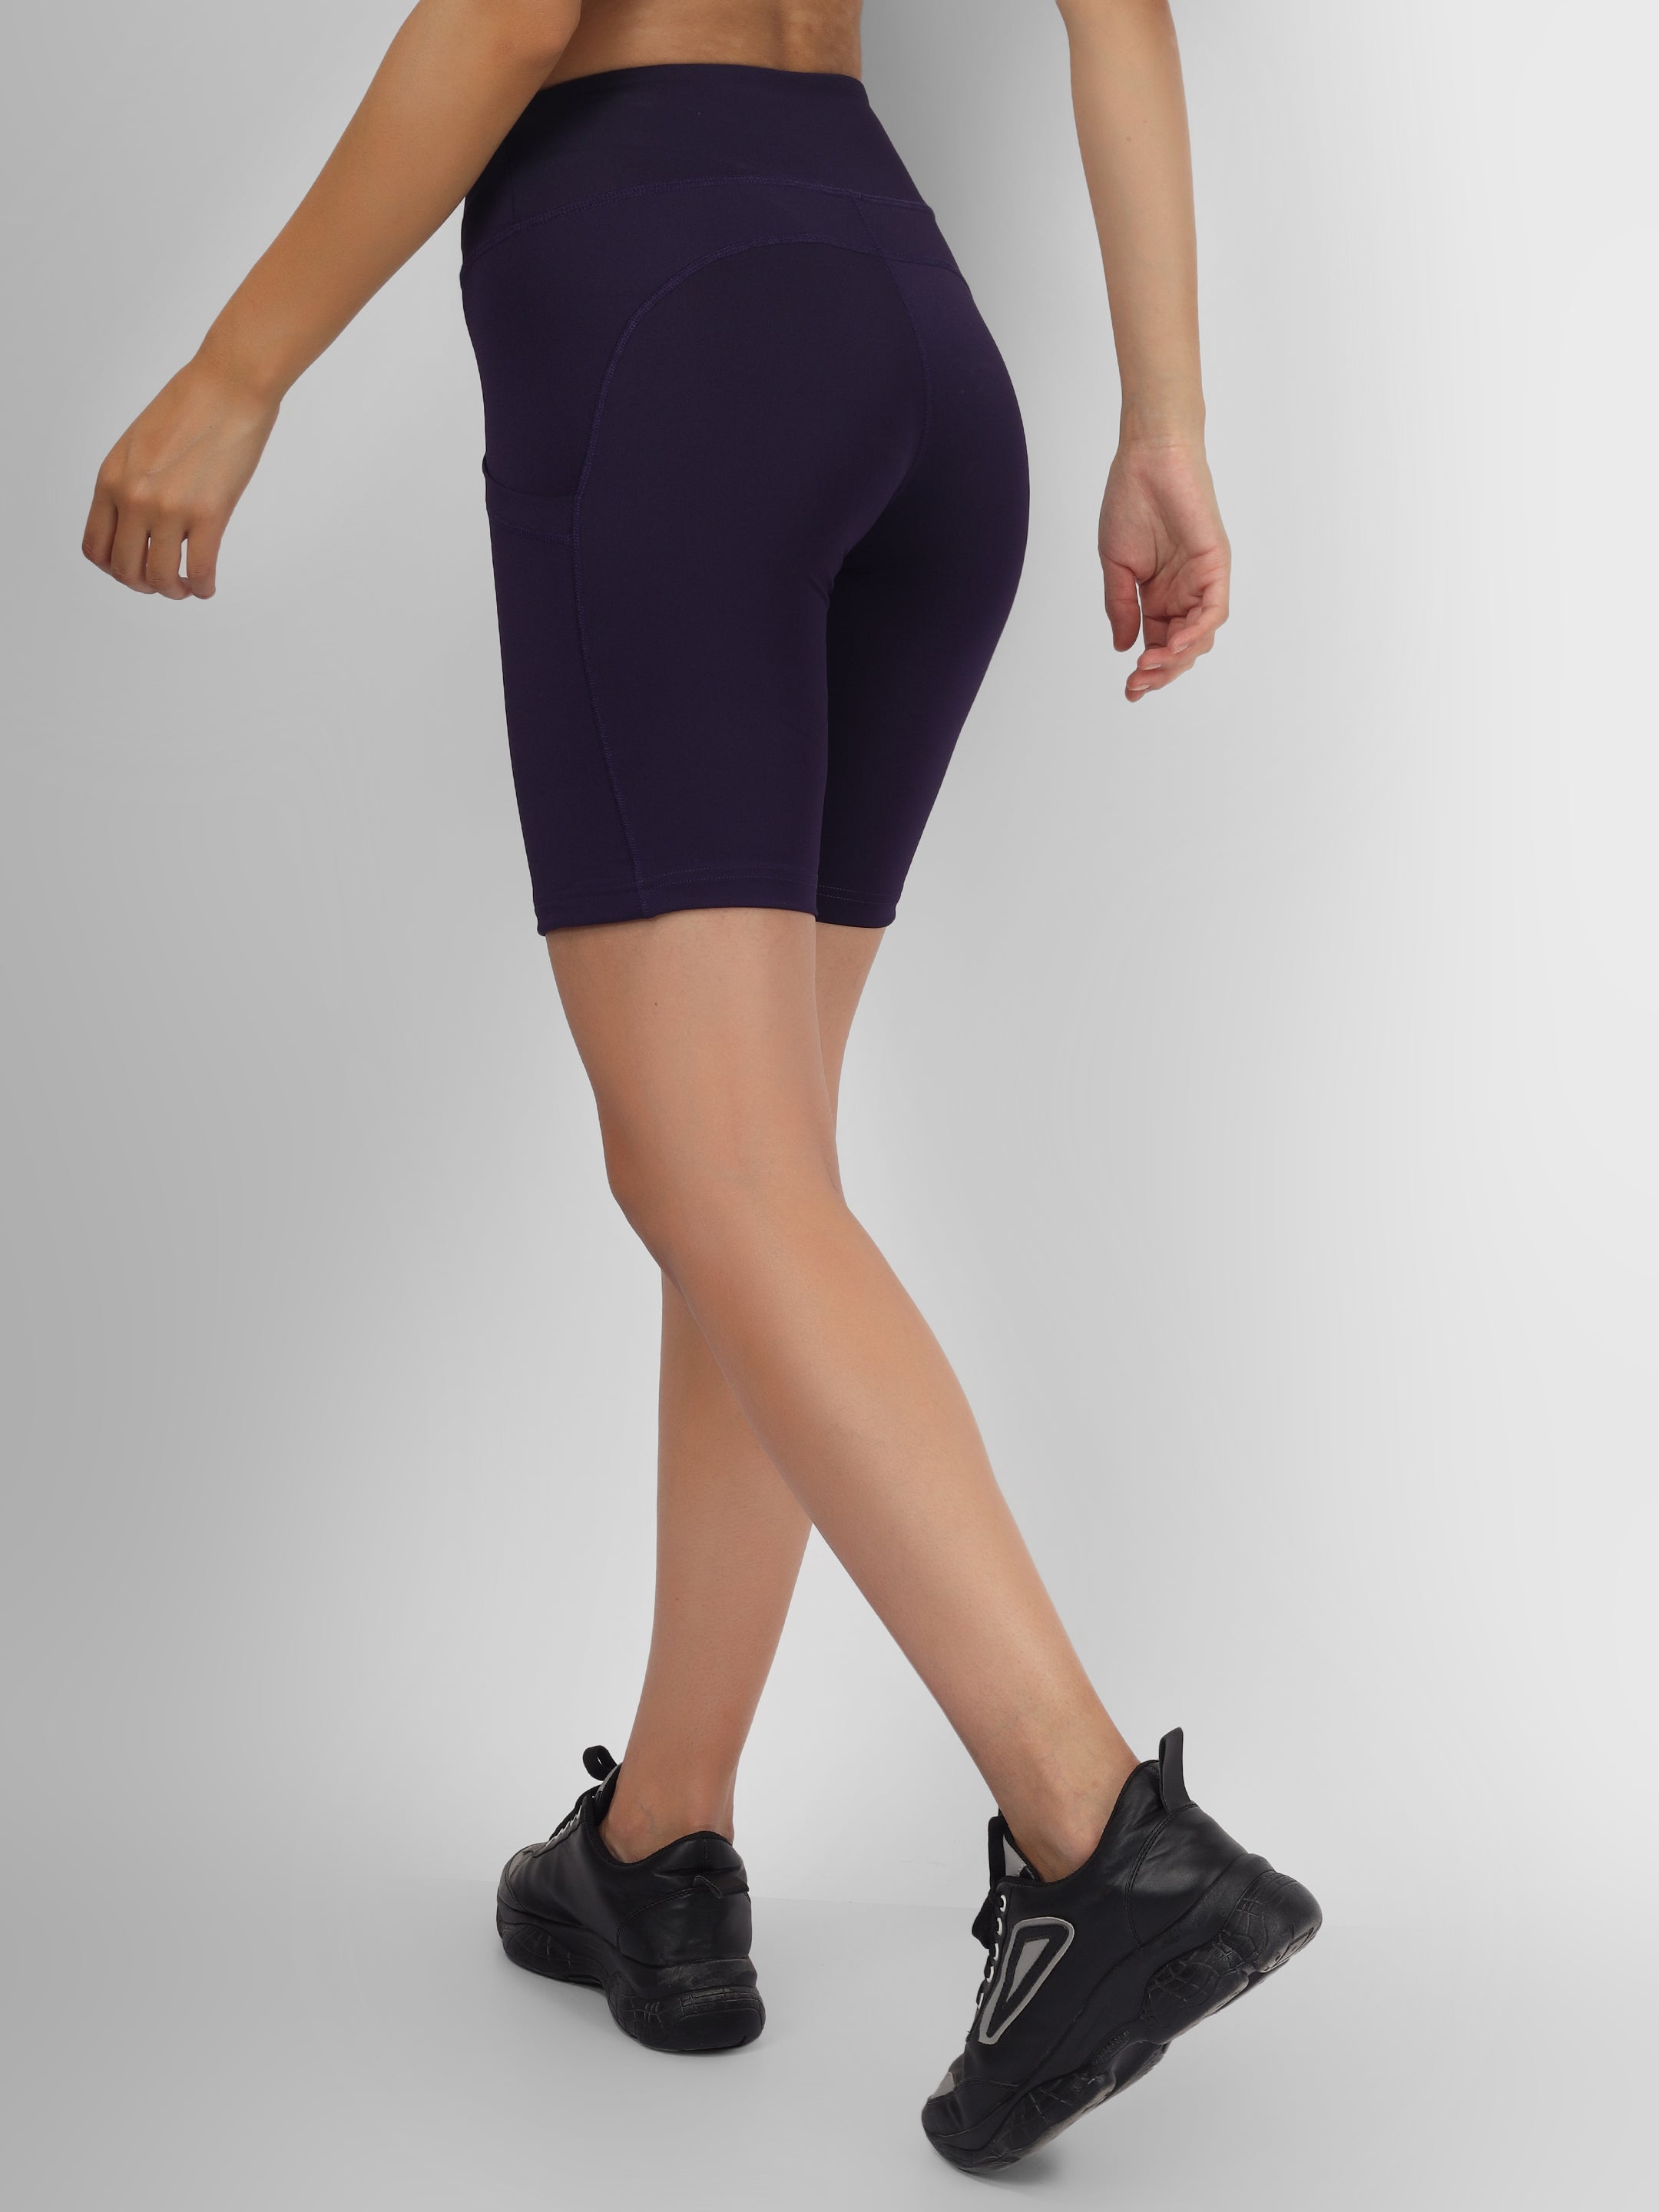 Creeluxe Fierce Purple Women's Shorts